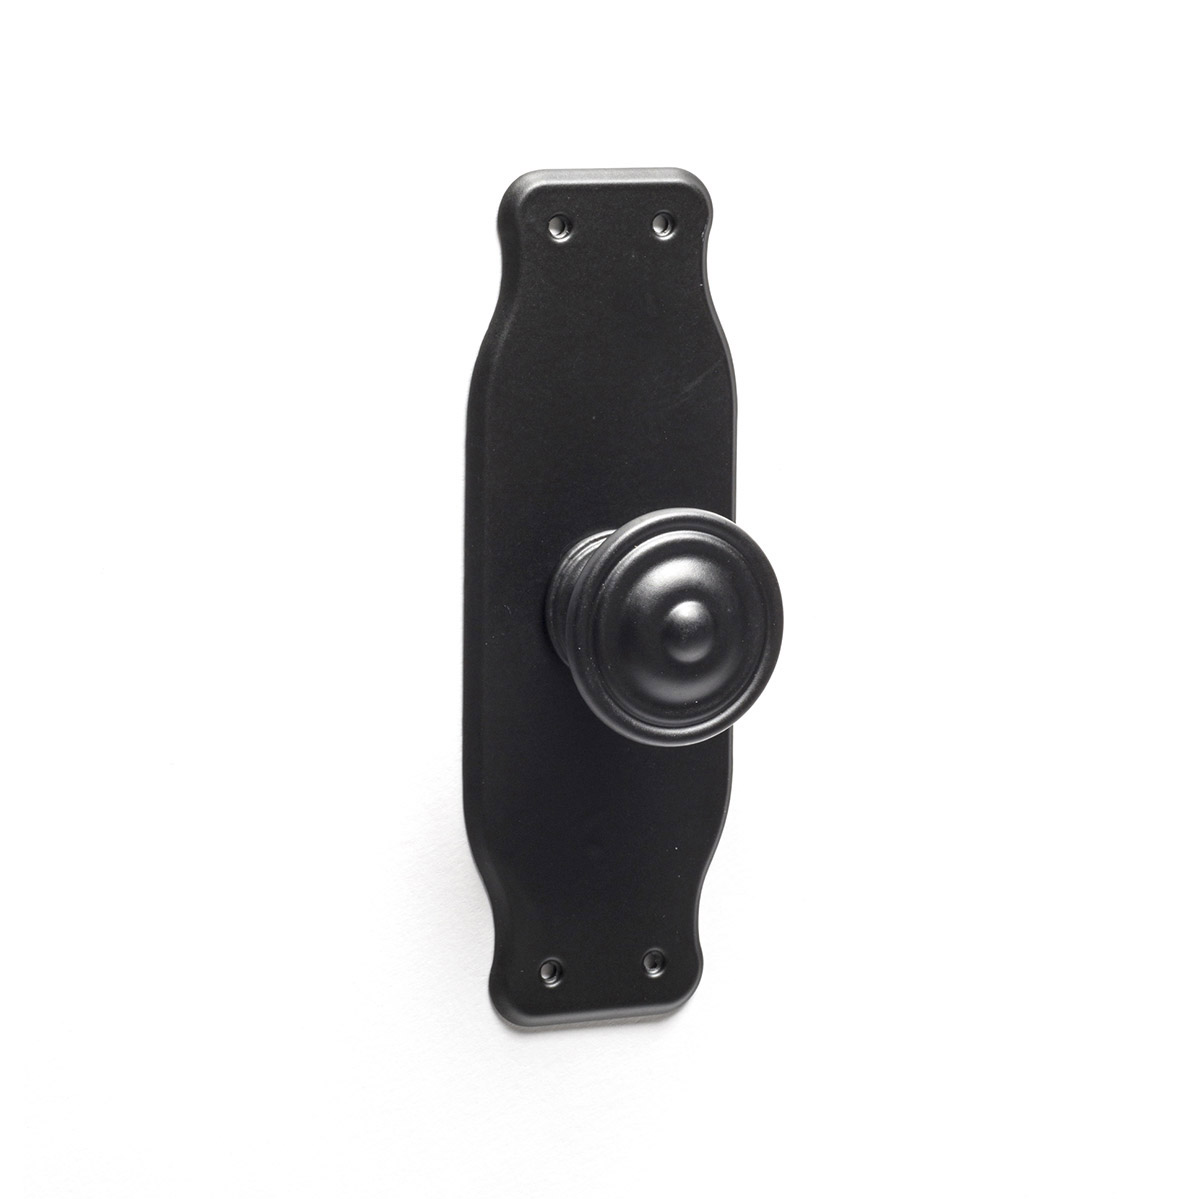 Bouton de plaque avec finition zamak noir, dimensions: 110x38x26mm